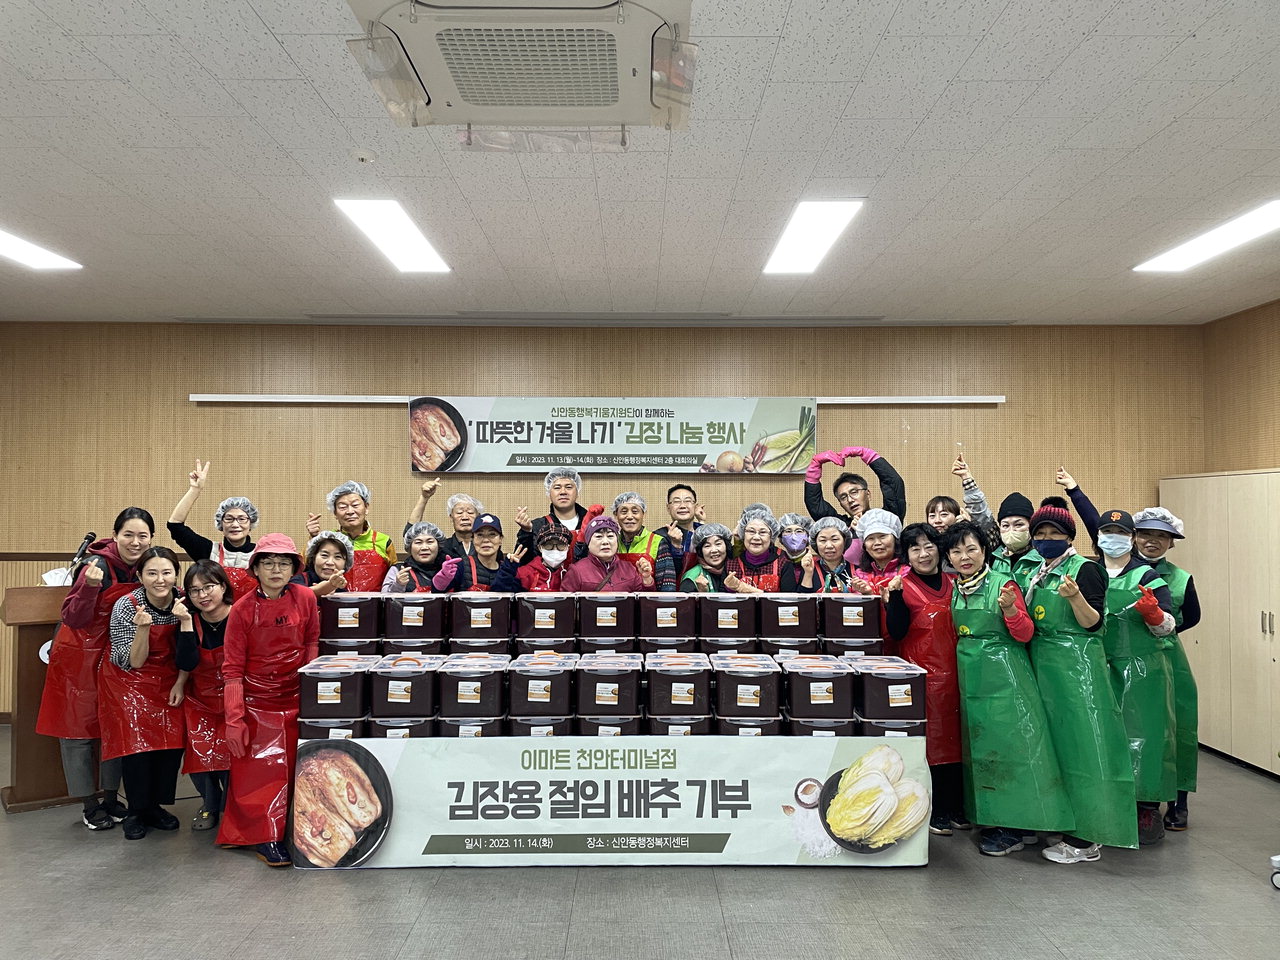 천안시 신안동 행복키움지원단이 14일 행정복지센터에서 ‘따뜻한 겨울 나기’ 김장 나눔 행사를 개최했다./천안시